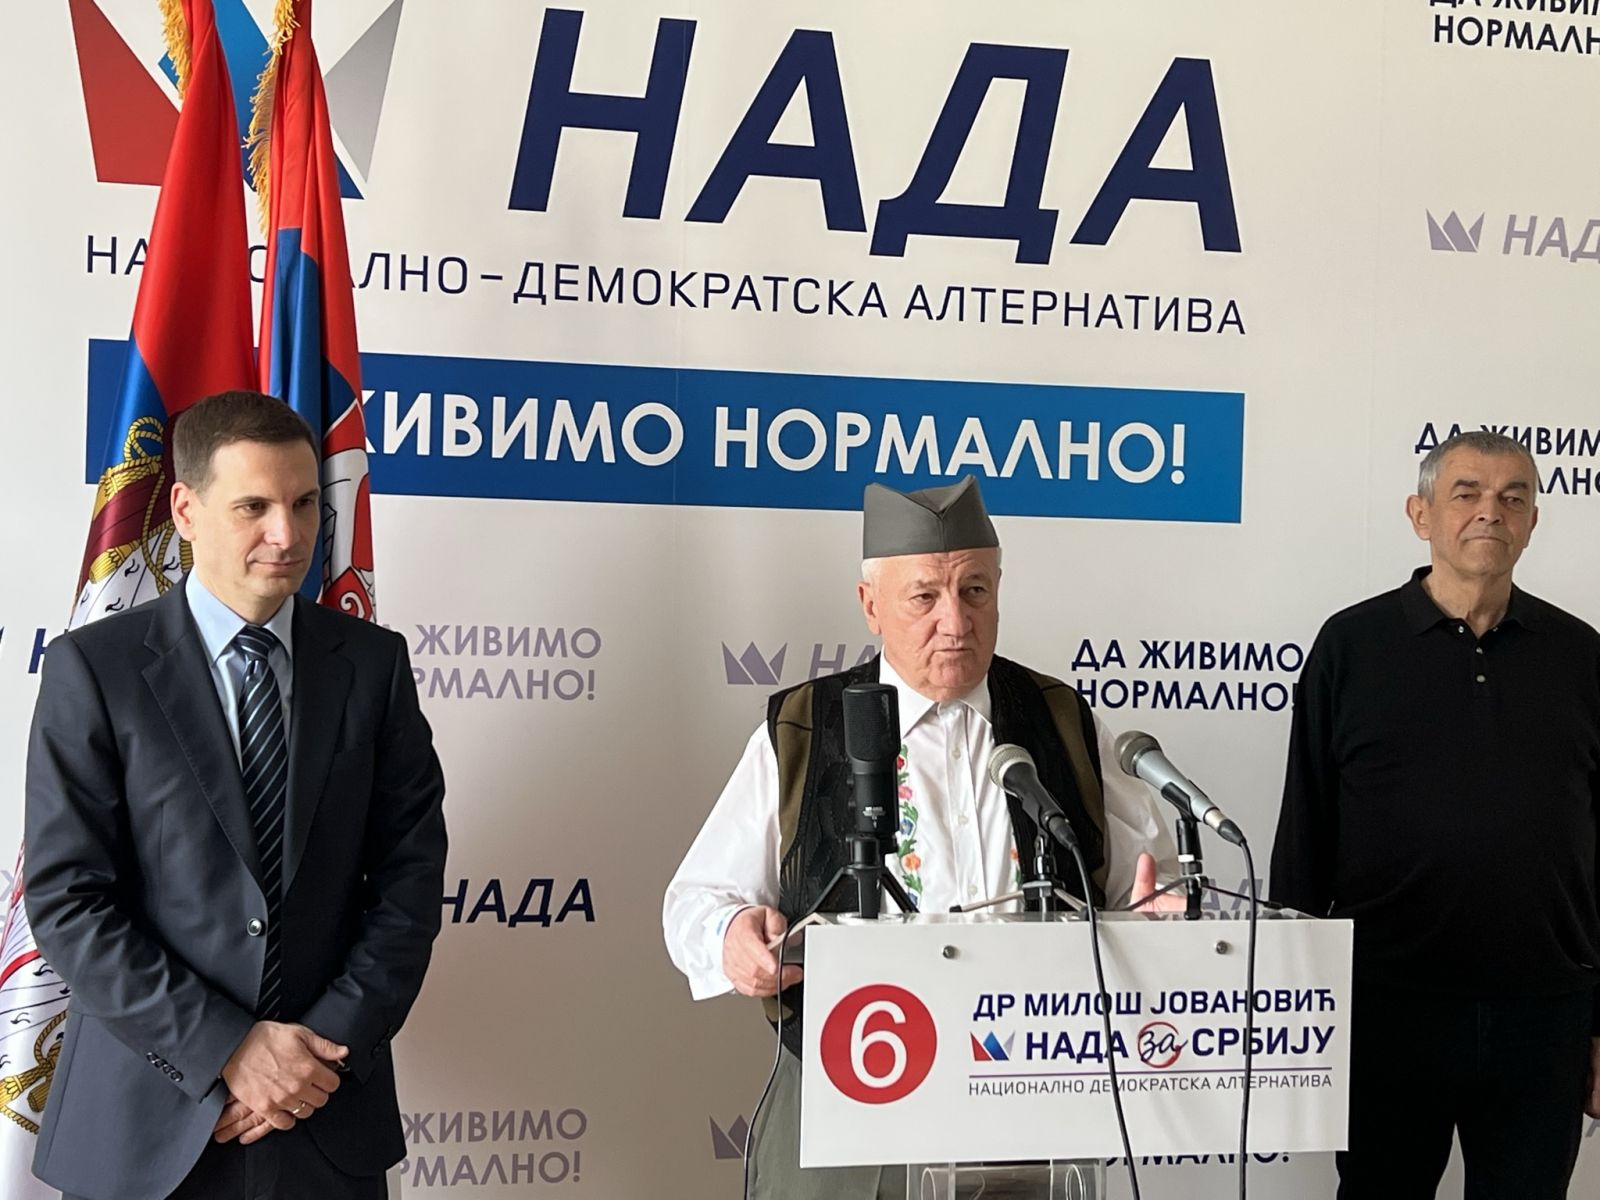 Miladin Ševarlić podržao dr Miloša Jovanovića i Srpsku koaliciju NADA